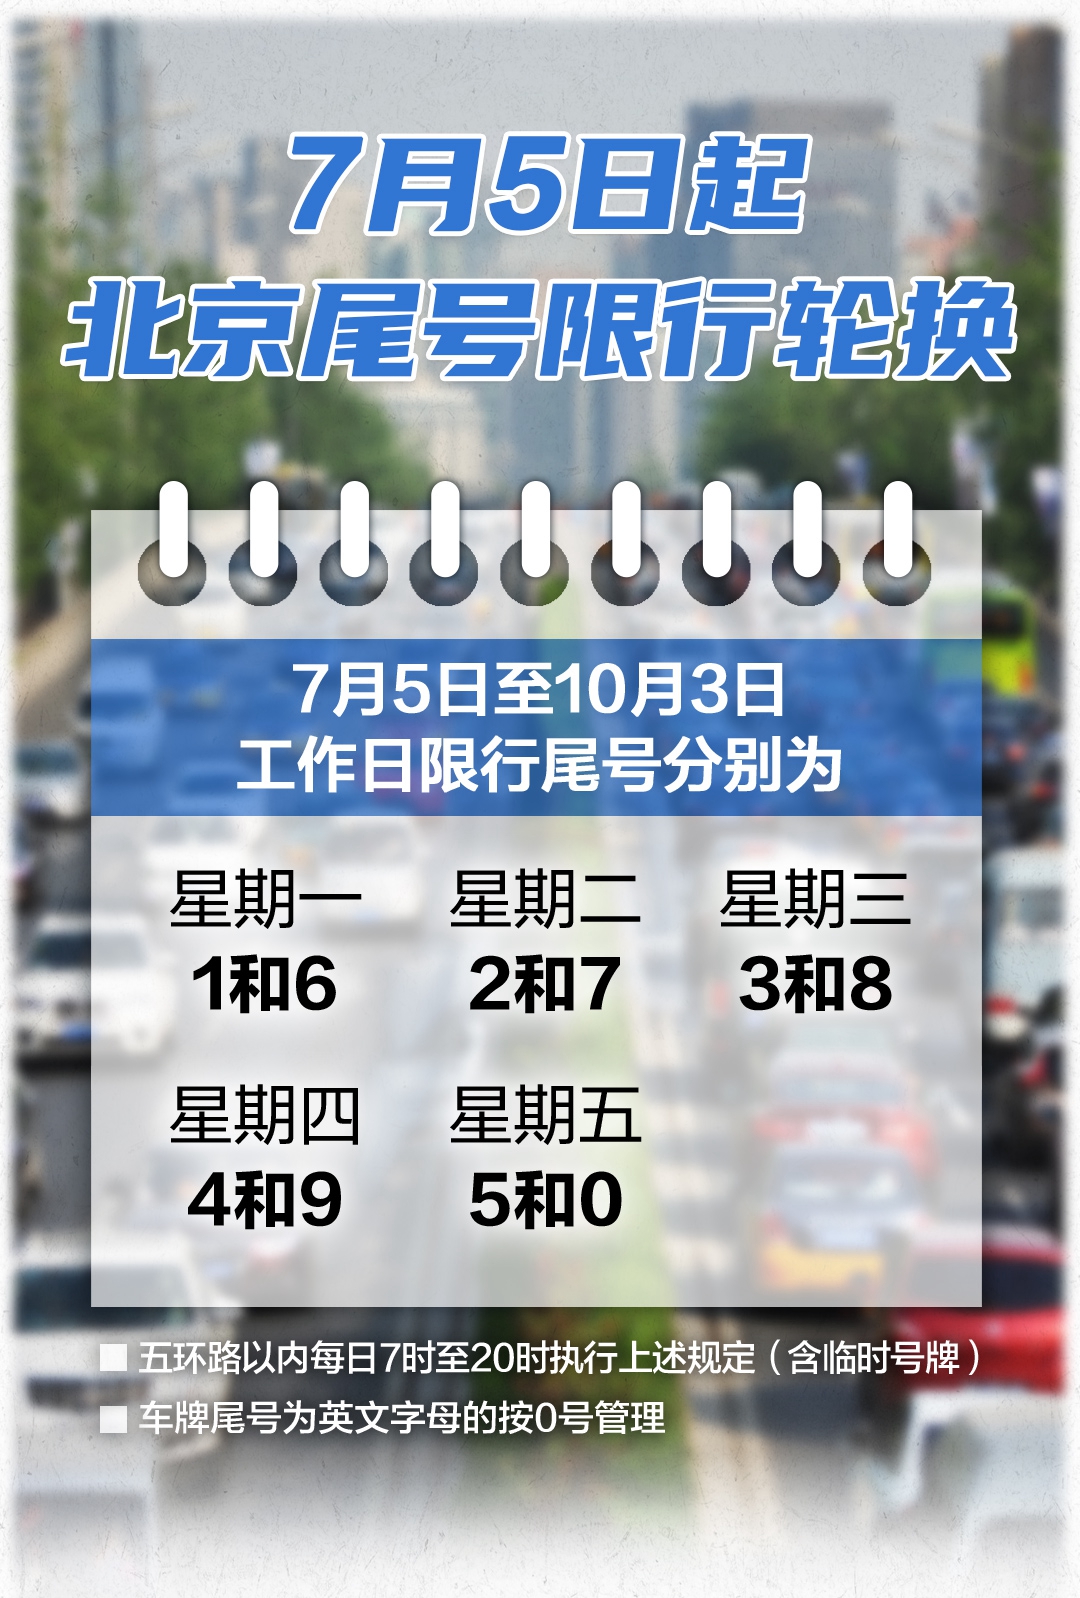 自明天(7月5日)起,北京实施新一轮尾号限行轮换,范围为五环路以内道路